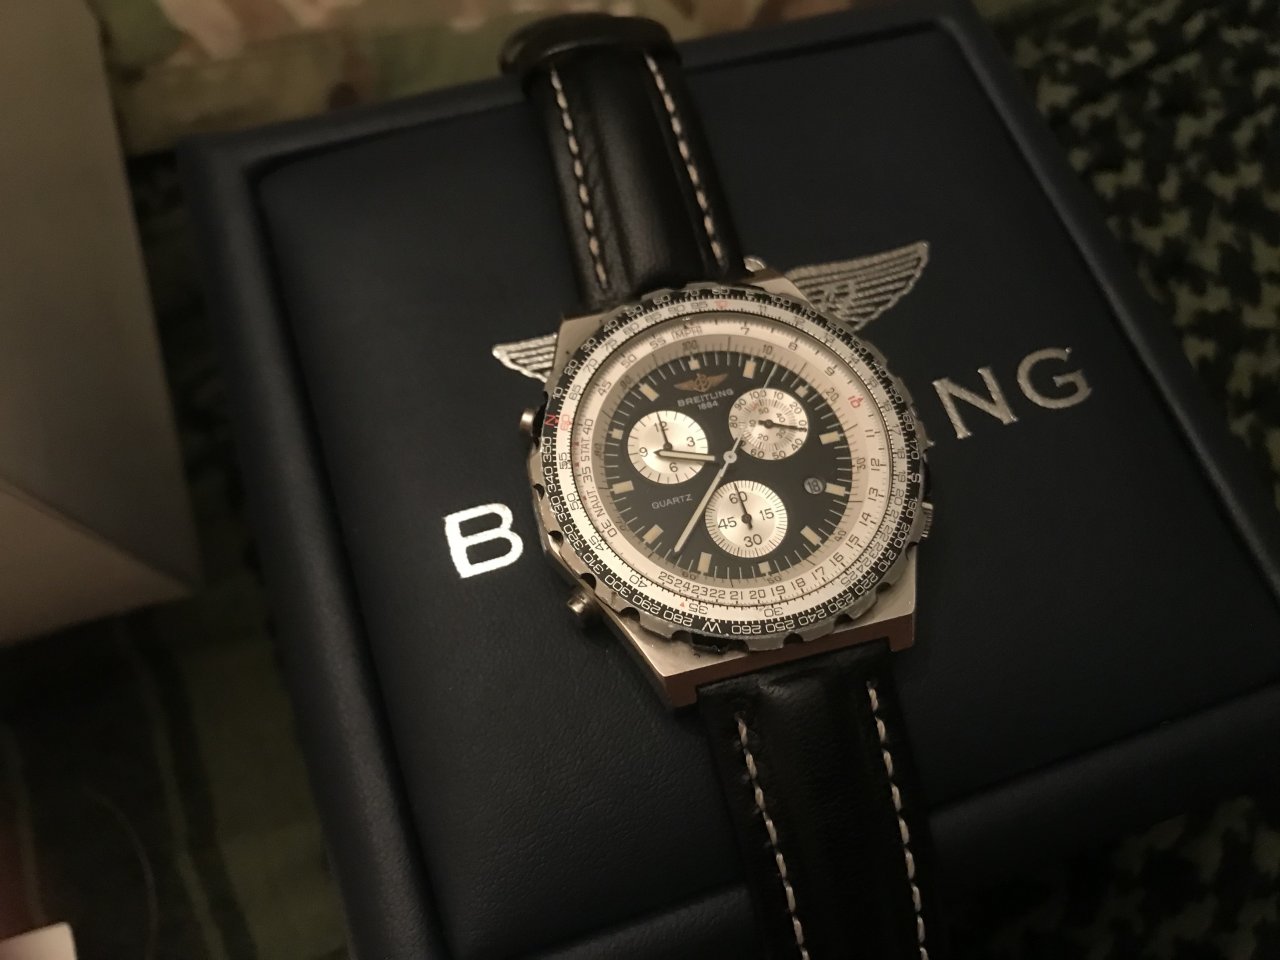 A Breitling Jupiter Pilot Watch - $1300